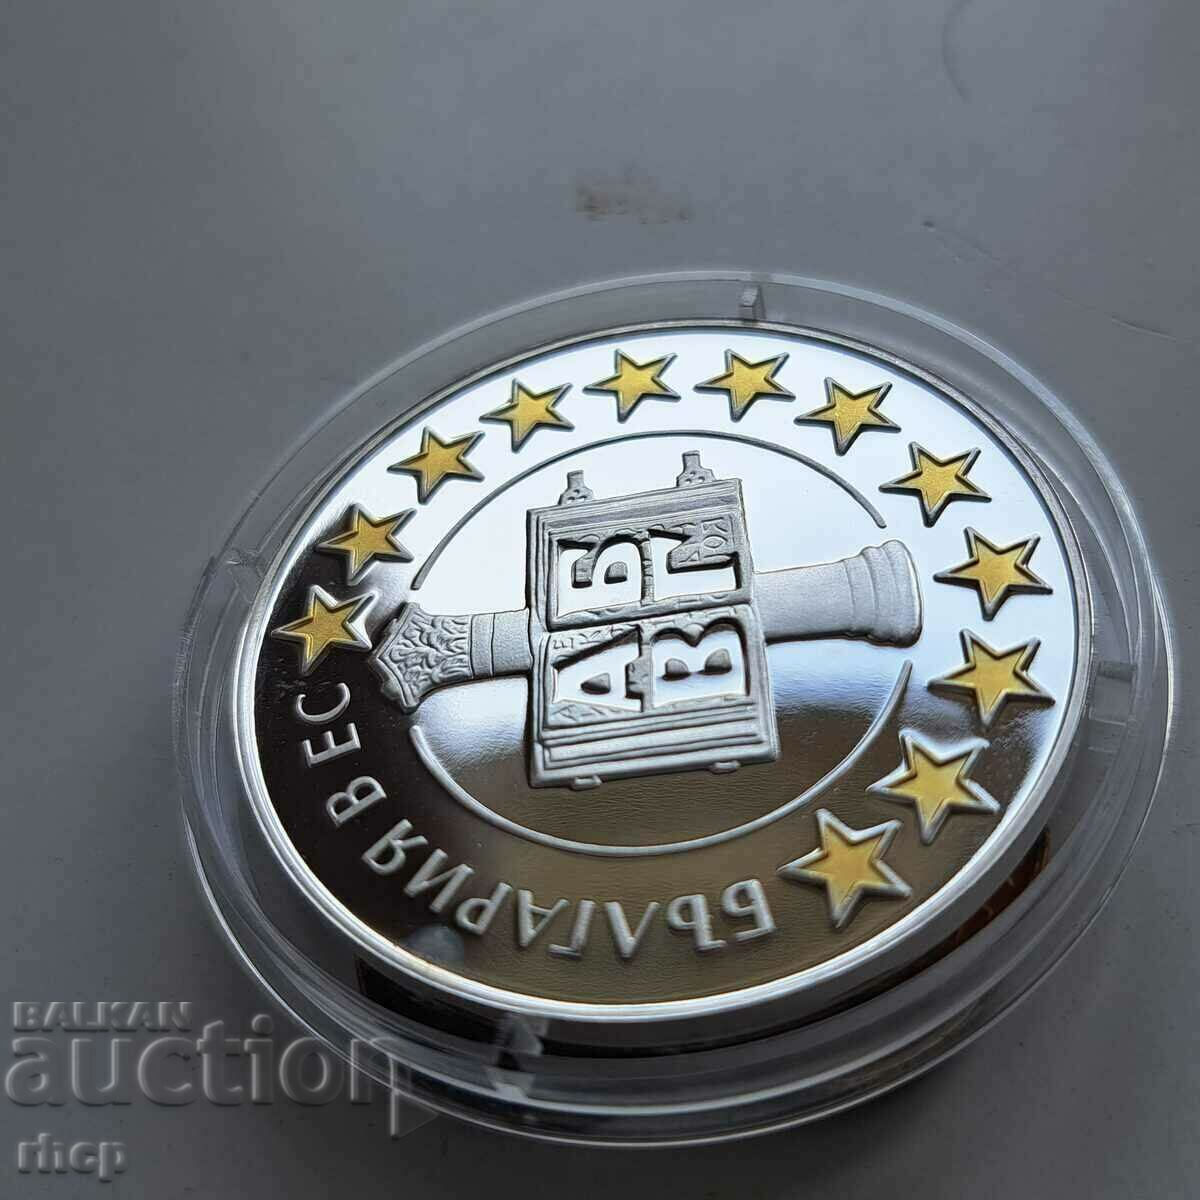 Bulgaria în moneda UE 2007 de argint